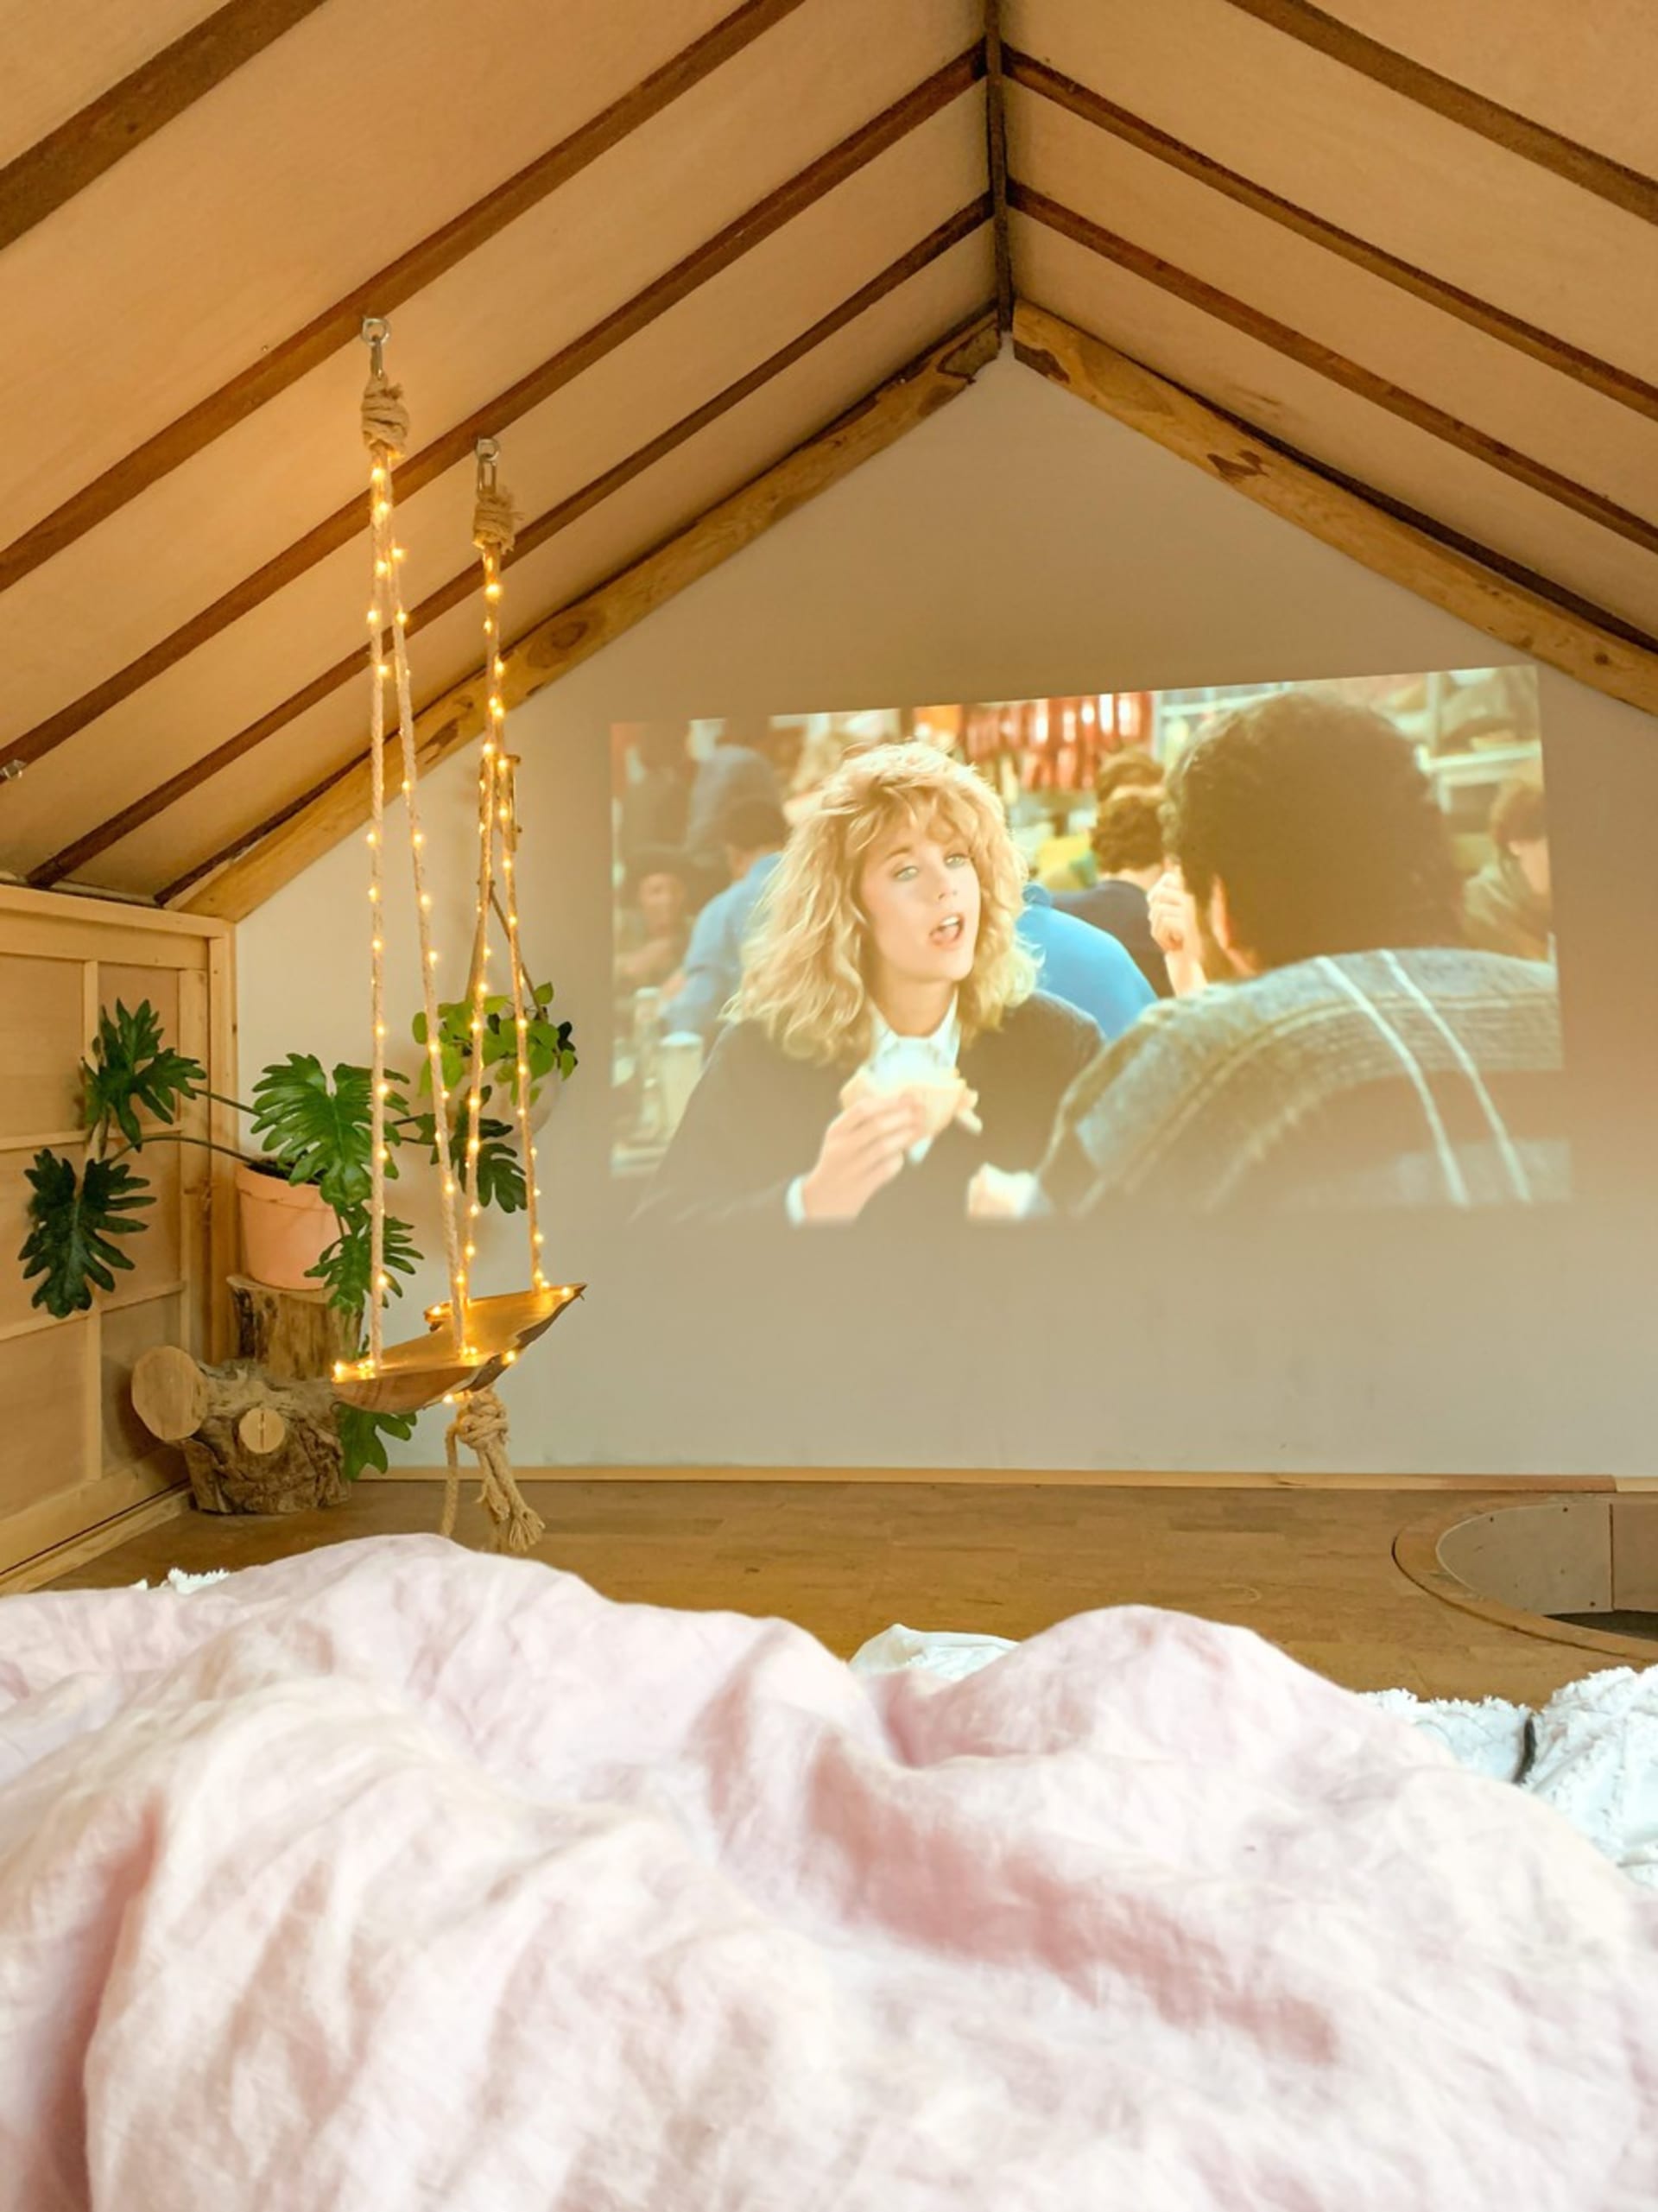 Domácí kino se dá sledovat přímo z postele